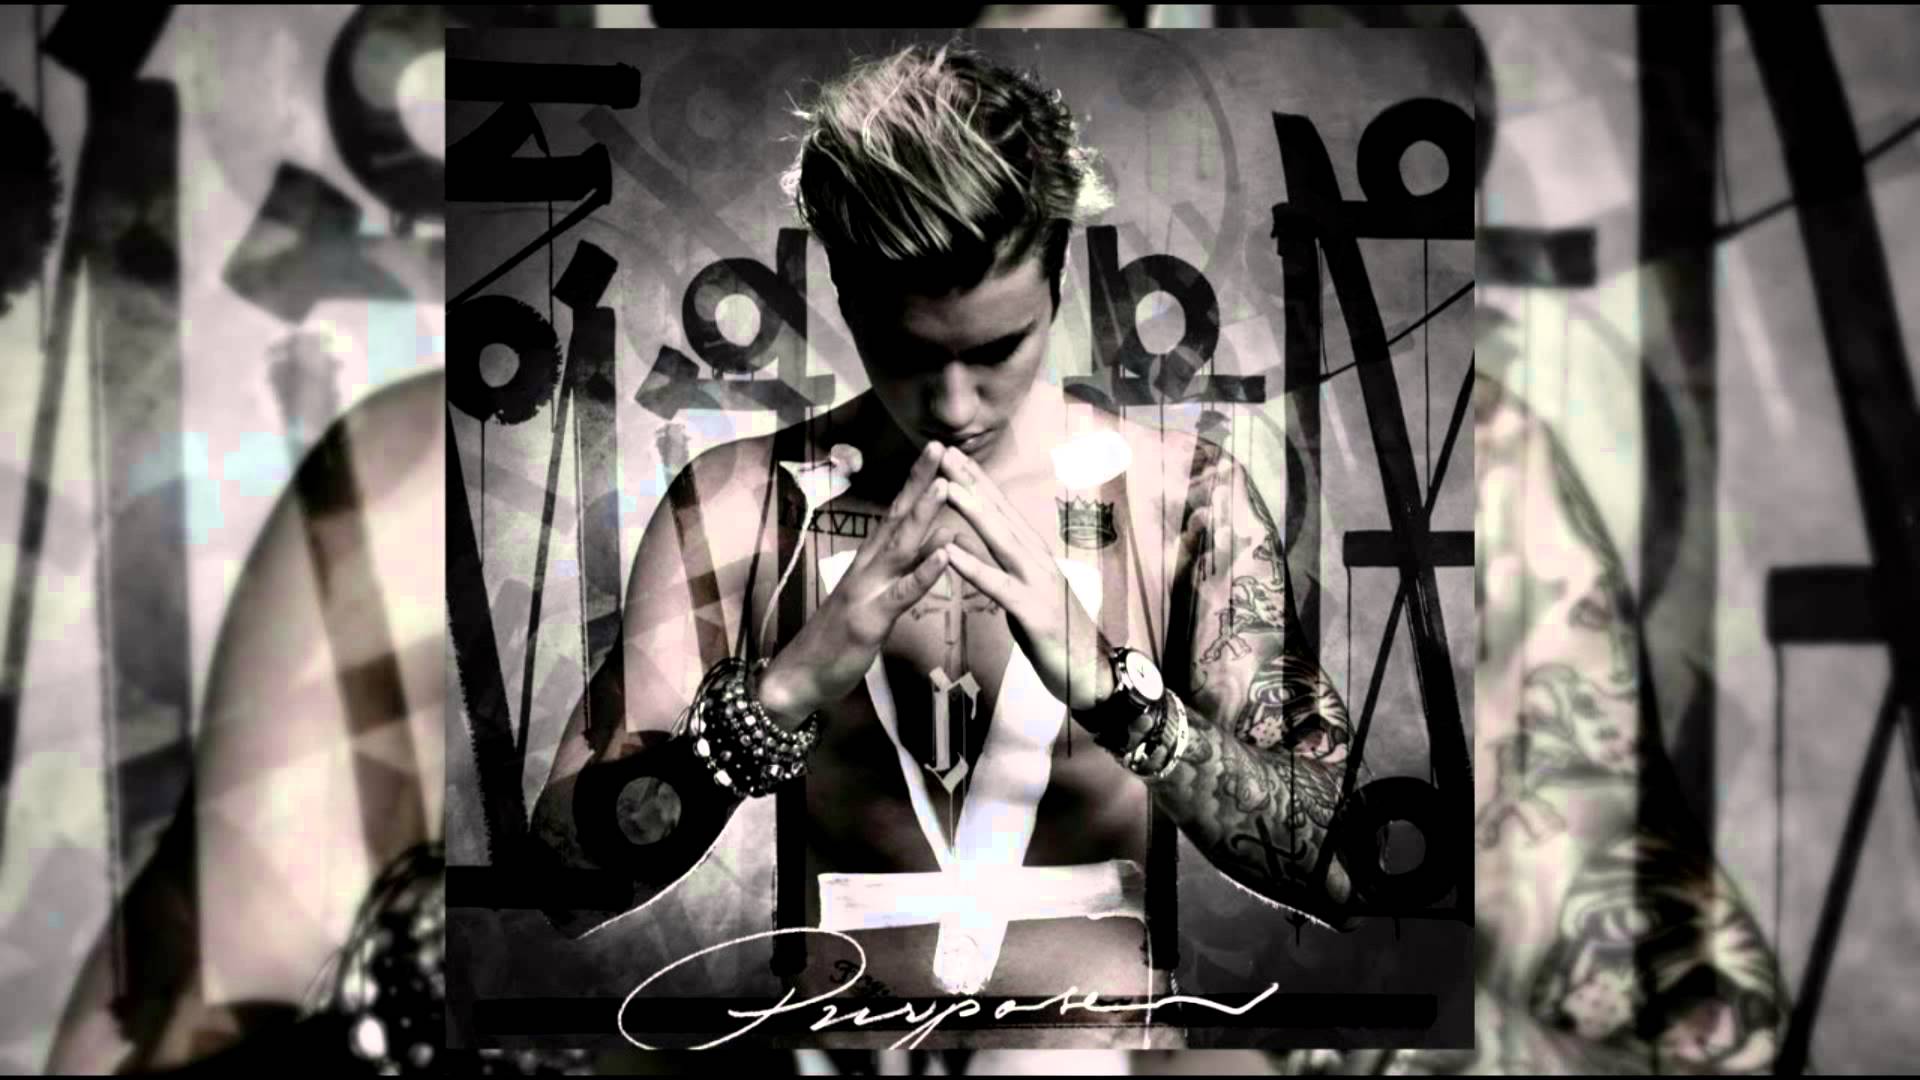 Justin Bieber Purpose Wallpapers - Wallpaper Cave1920 x 1080